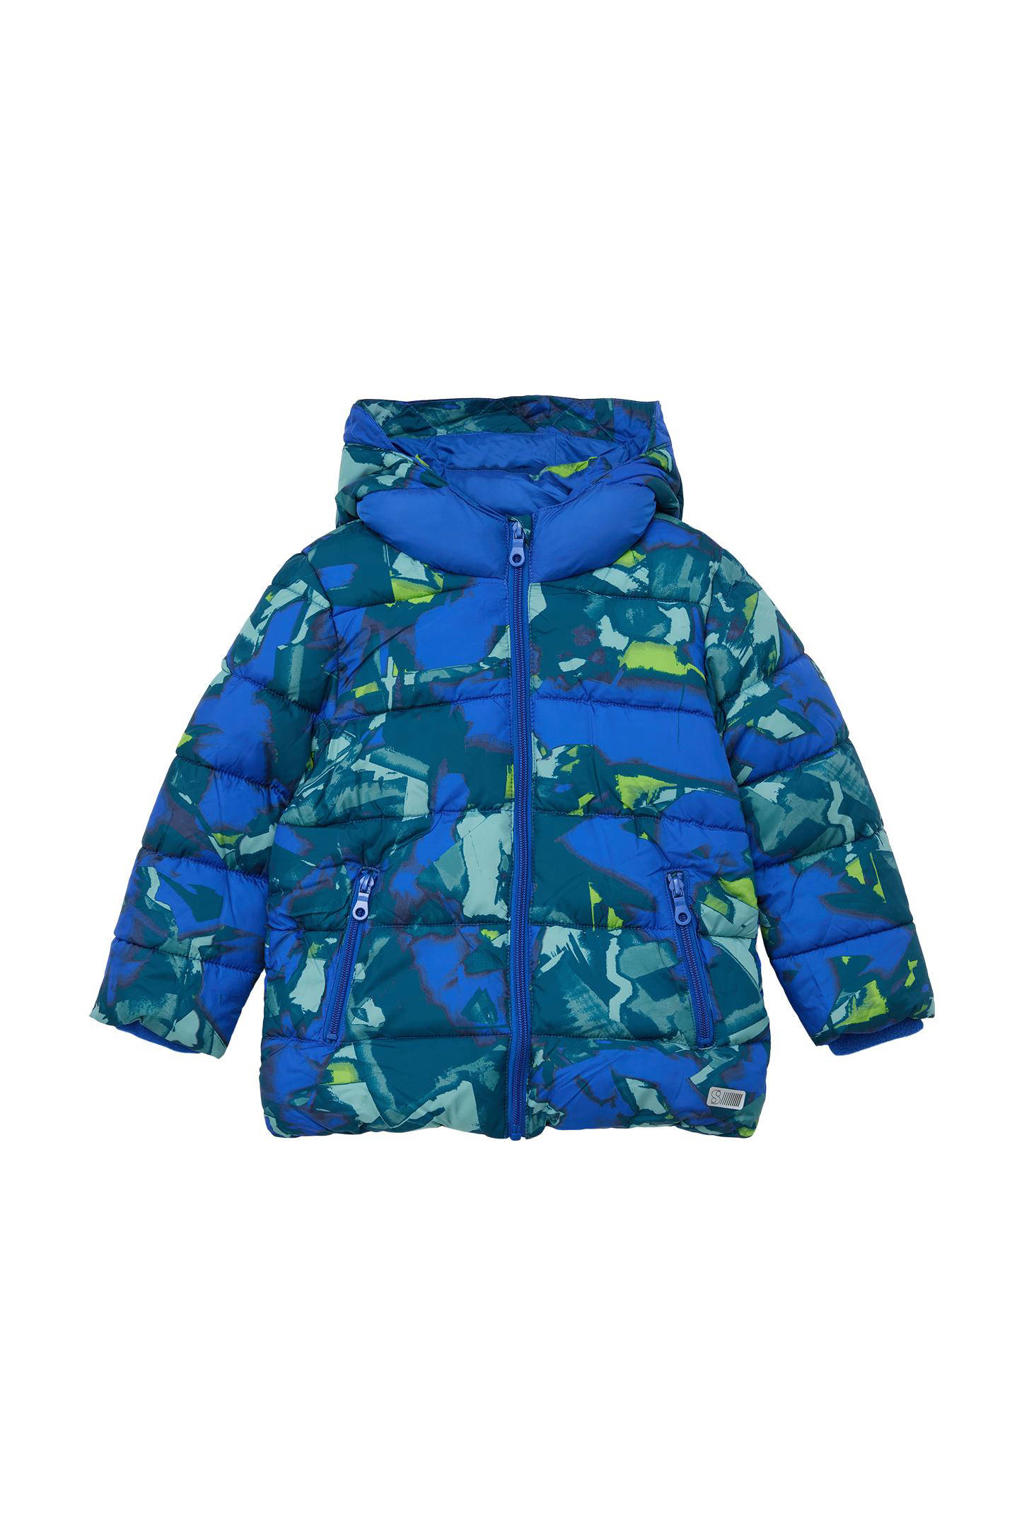 Blauw en groene jongens s.Oliver gewatteerde winterjas hardblauw van polyester met all over print, lange mouwen, capuchon en ritssluiting